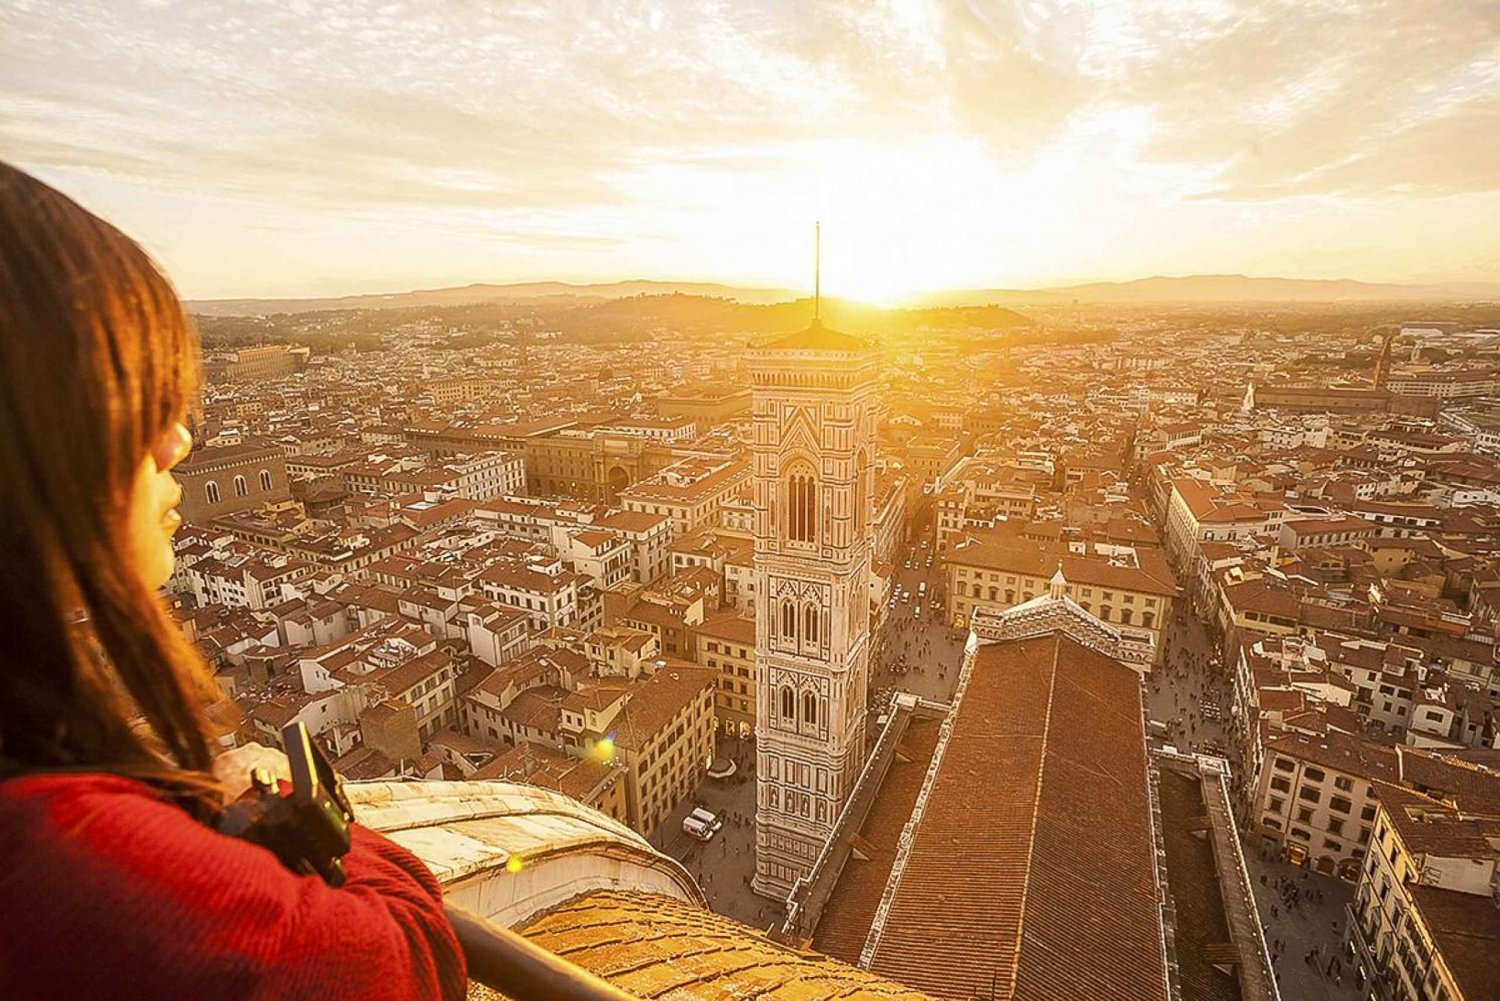 Florence : Visite guidée de la cathédrale, du baptistère et du musée du Duomo